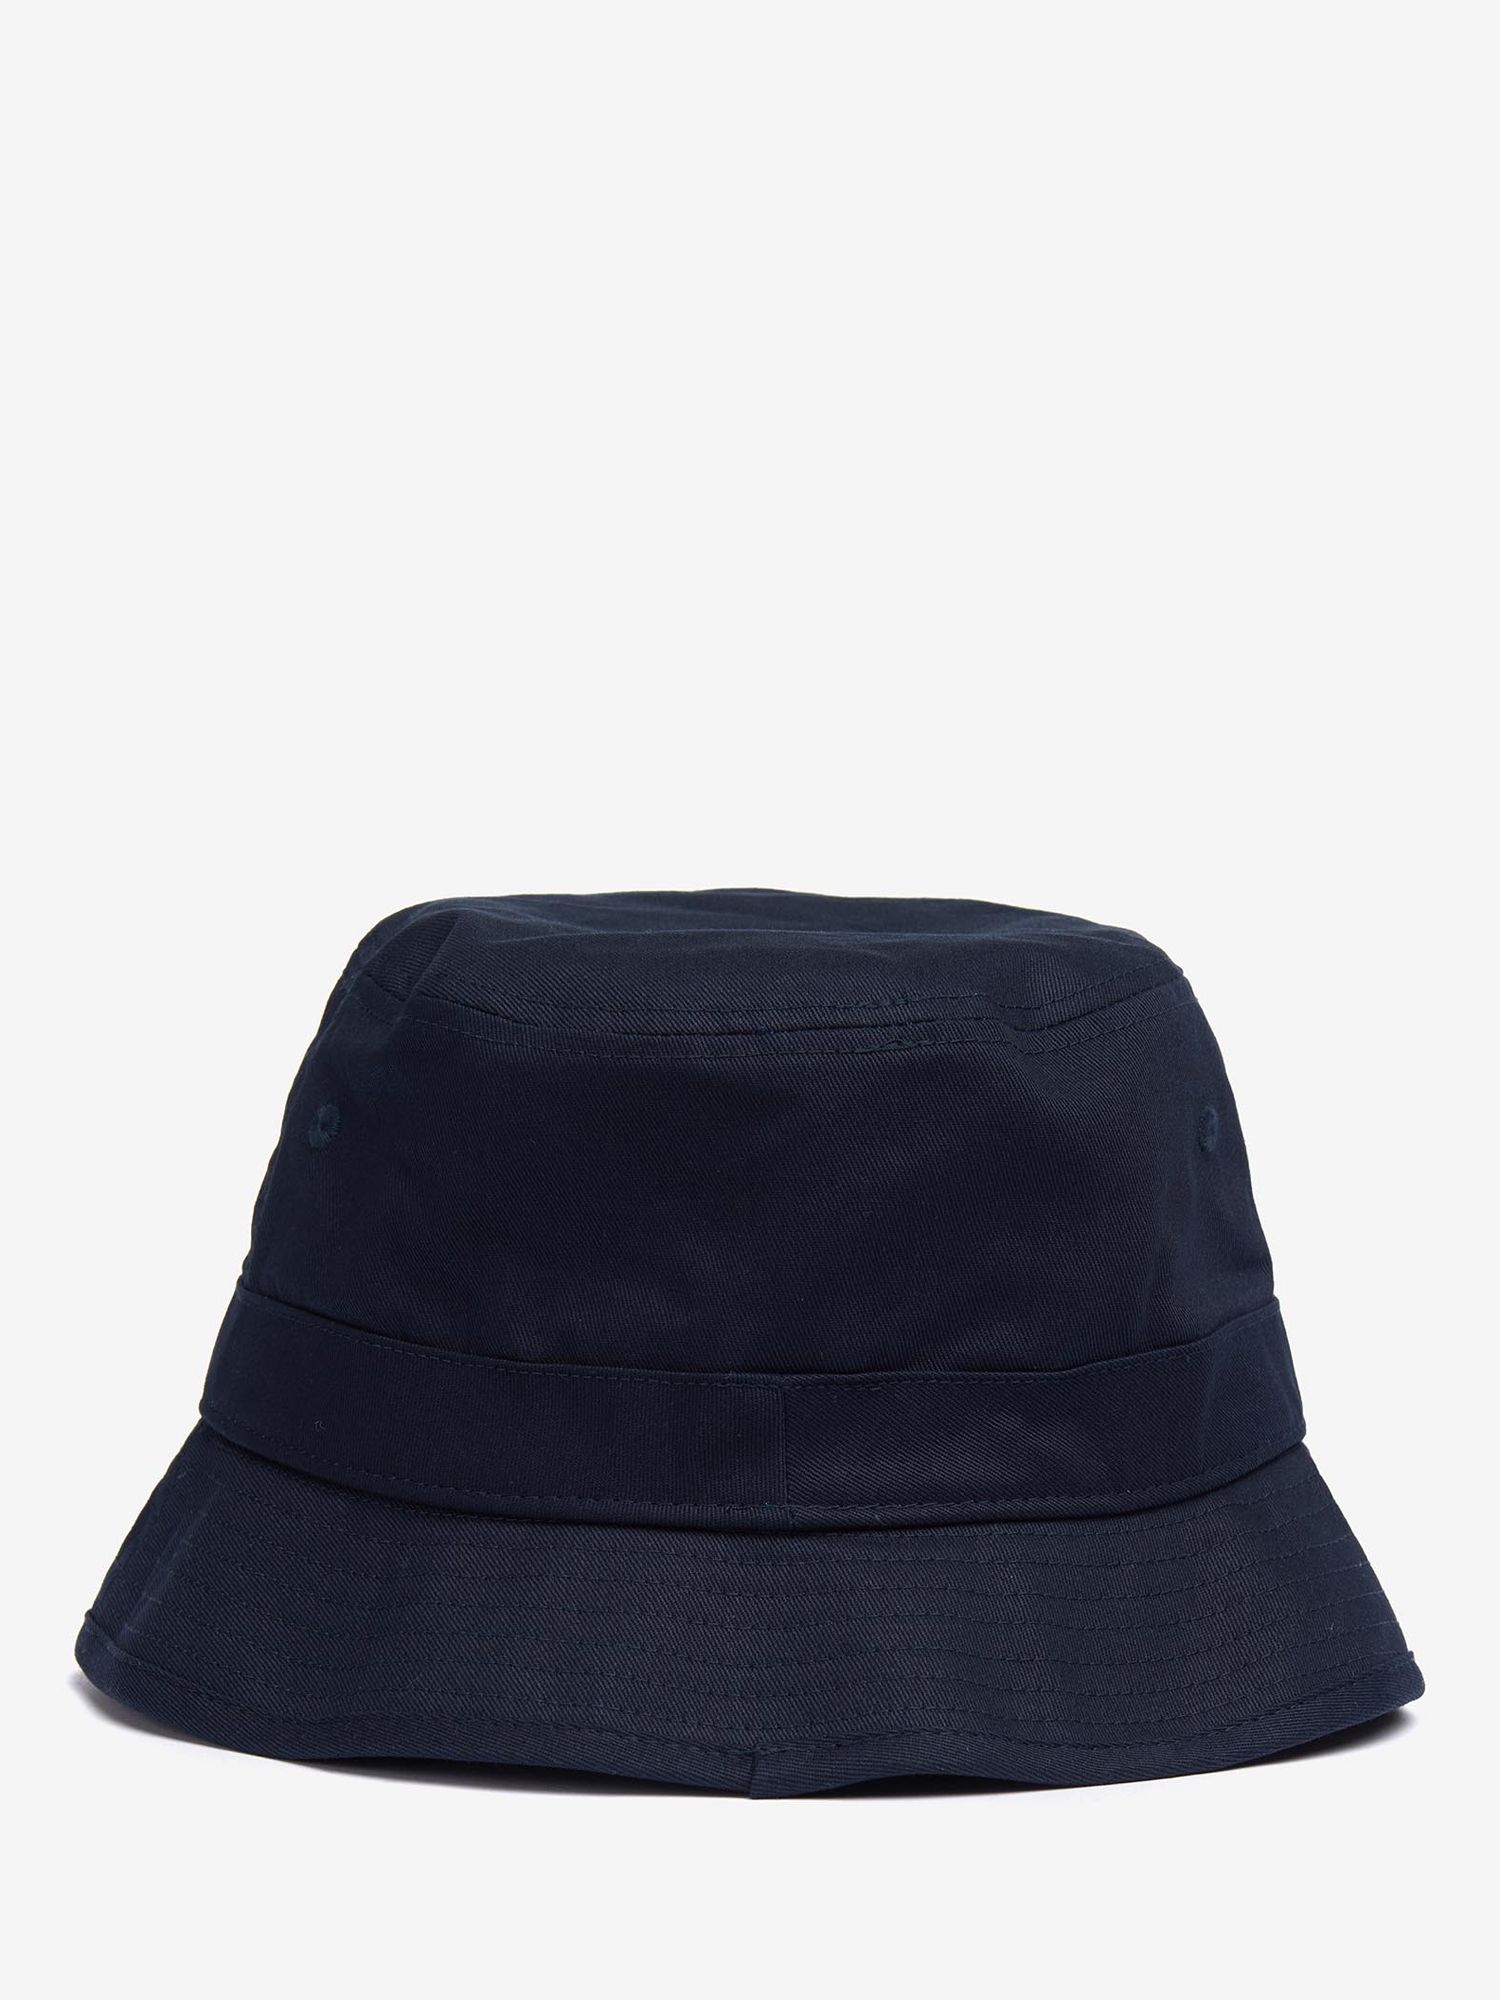 Barbour Classic Bucket Hat, Navy, M